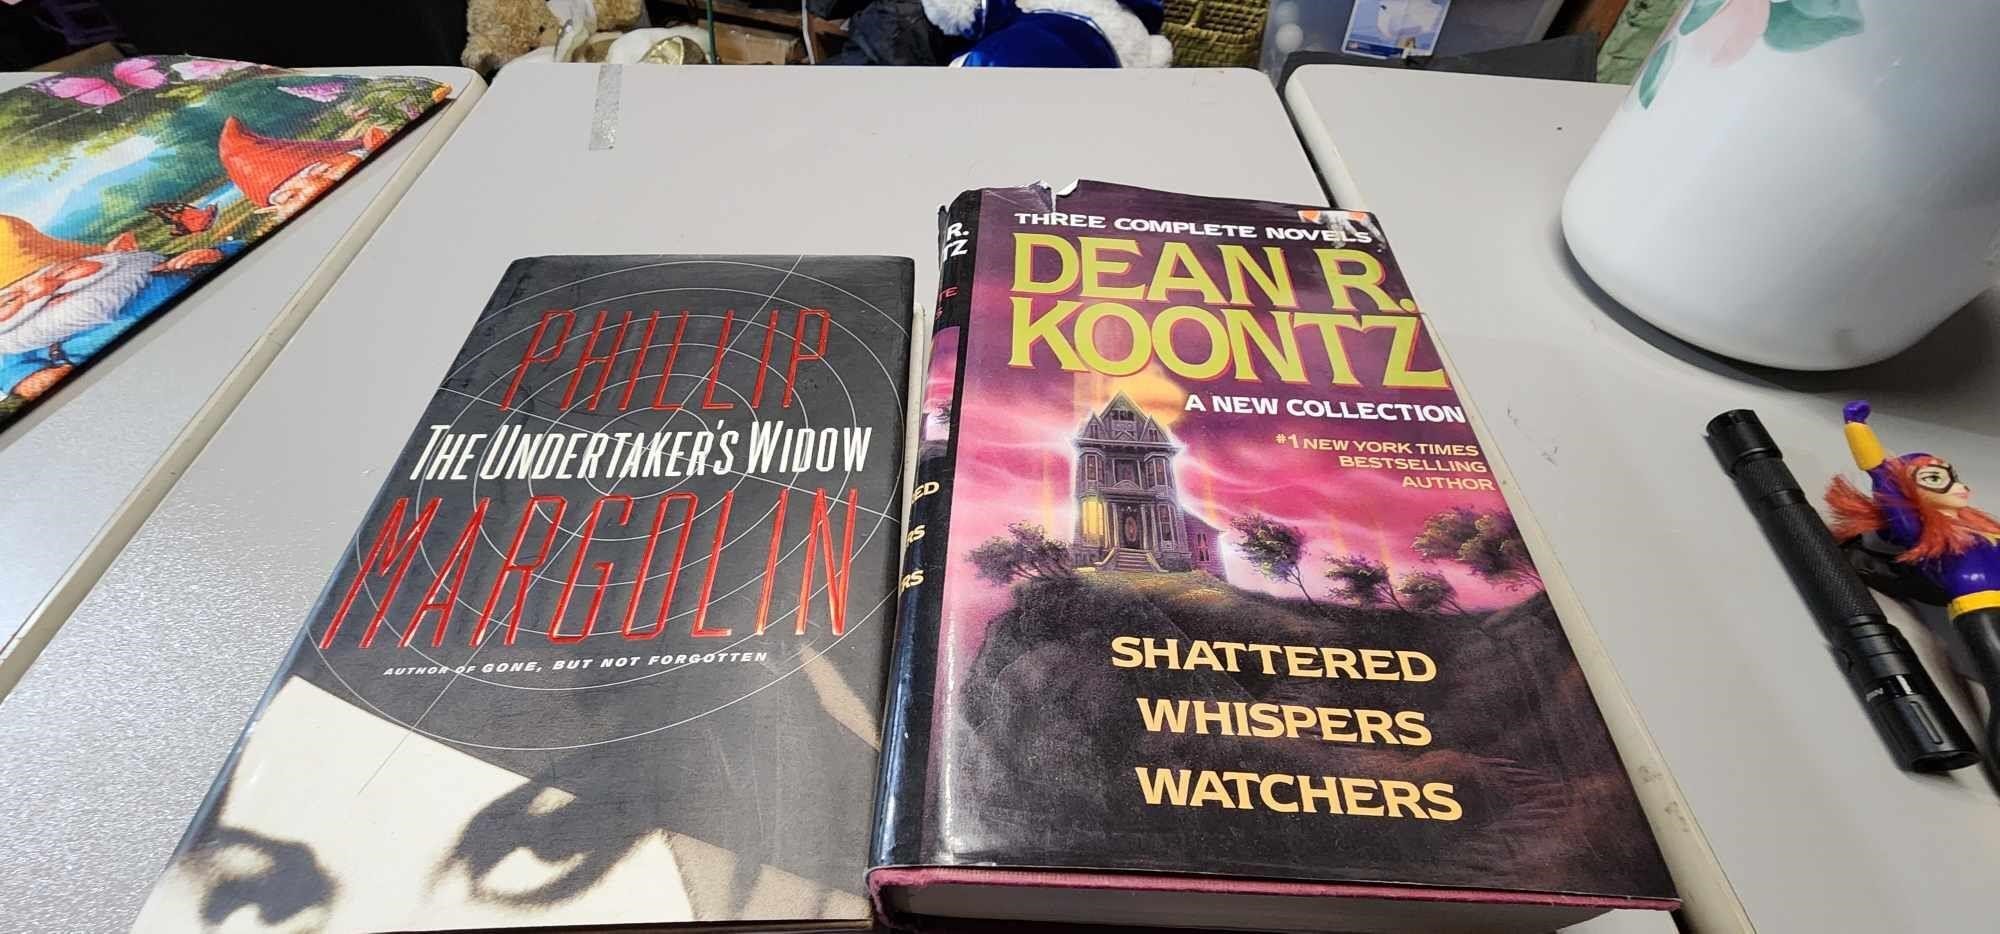 Dean R Koontz and Phillip Marcolin Books Novel